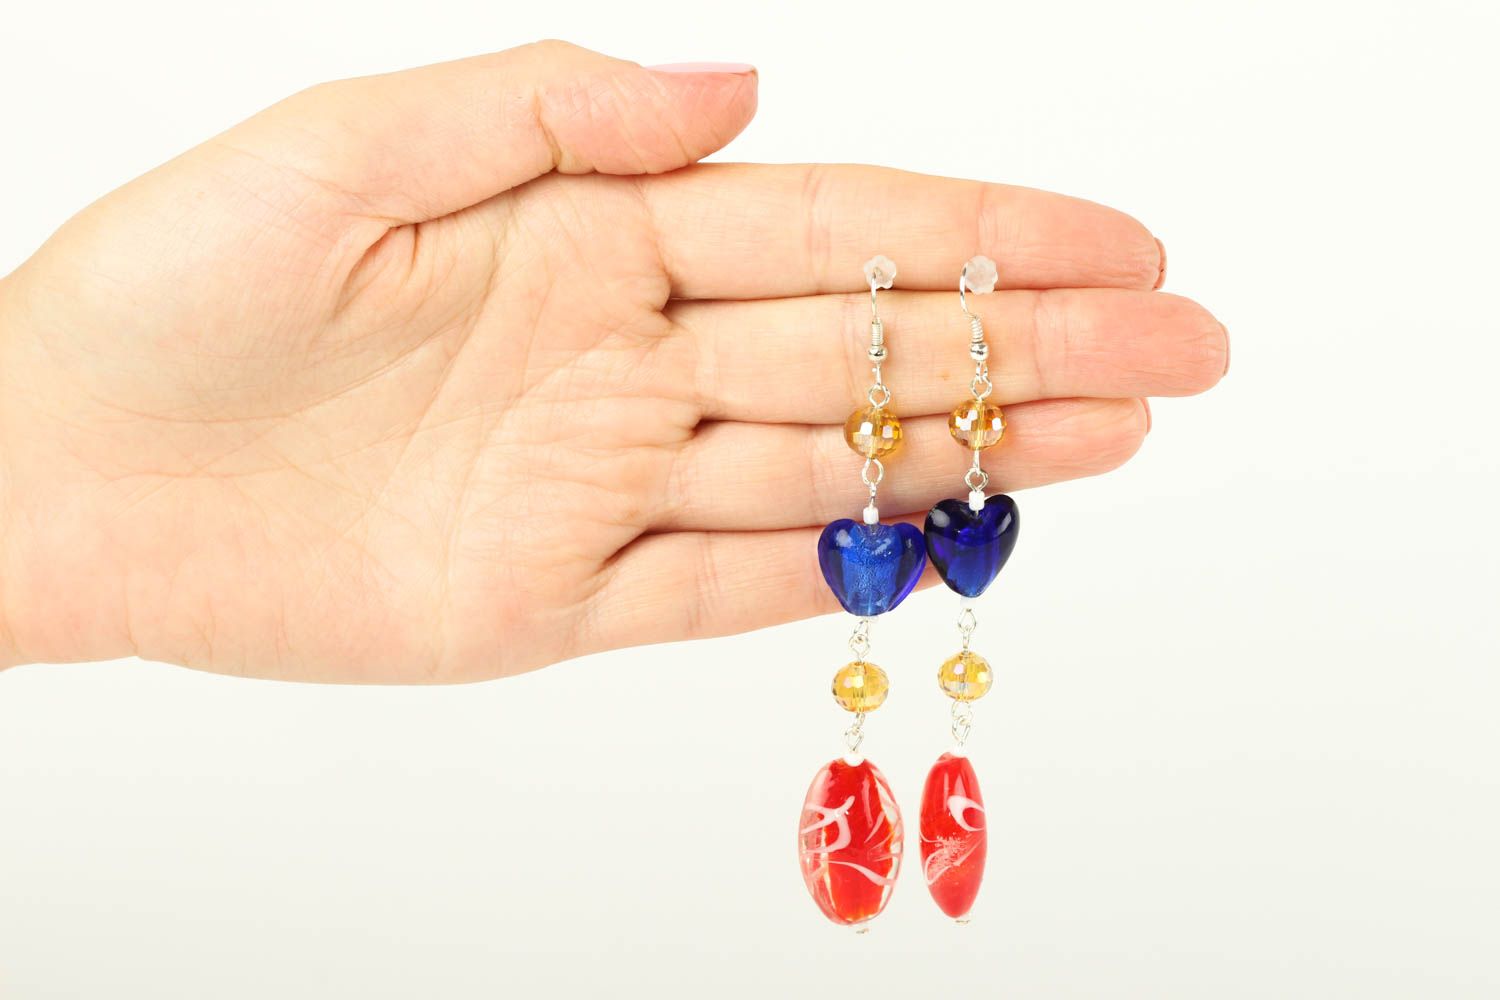 Handmade long earrings designer jewelry elite accessory gift for women photo 5